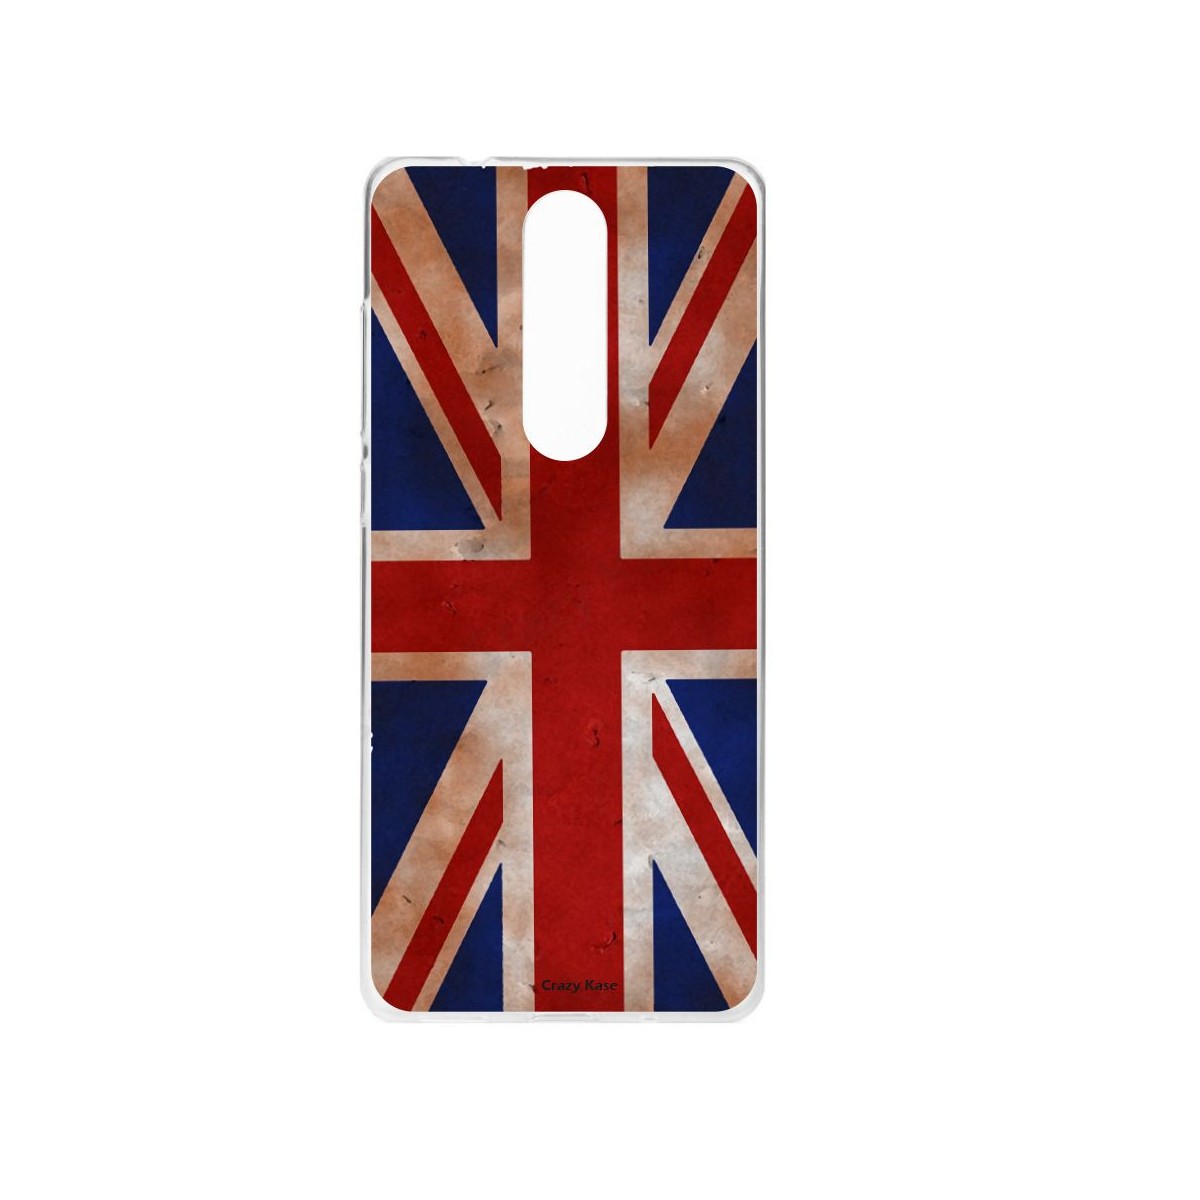 Coque Nokia 5.1 souple motif Drapeau UK vintage - Crazy Kase